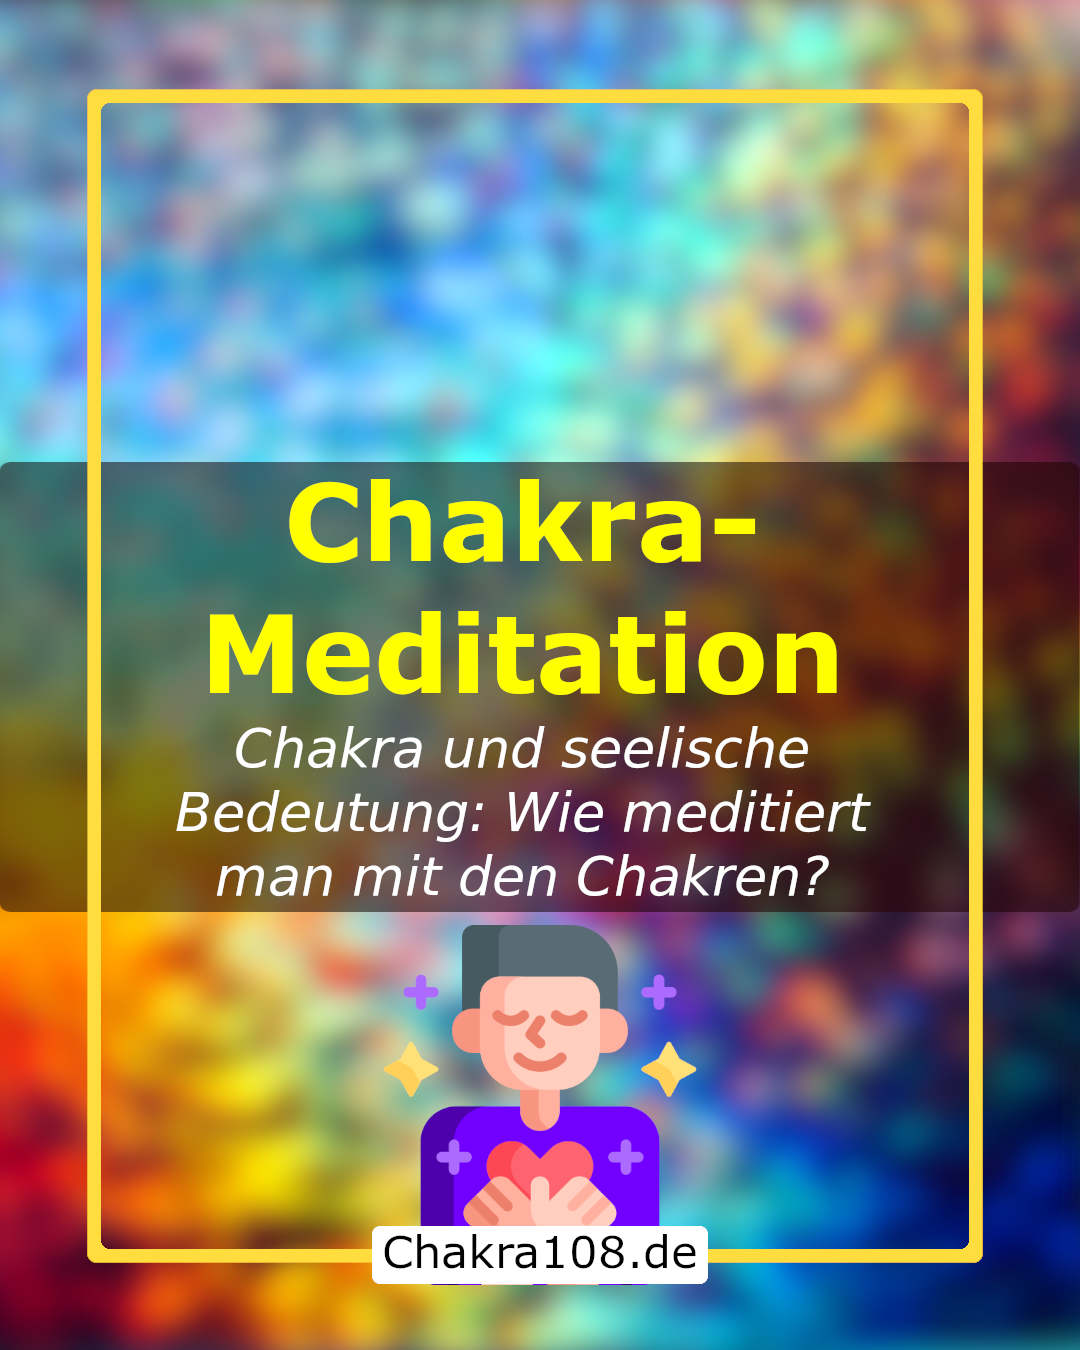 Chakra-Meditation: Chakra und seelische Bedeutung - wie meditiert man mit den Chakren?